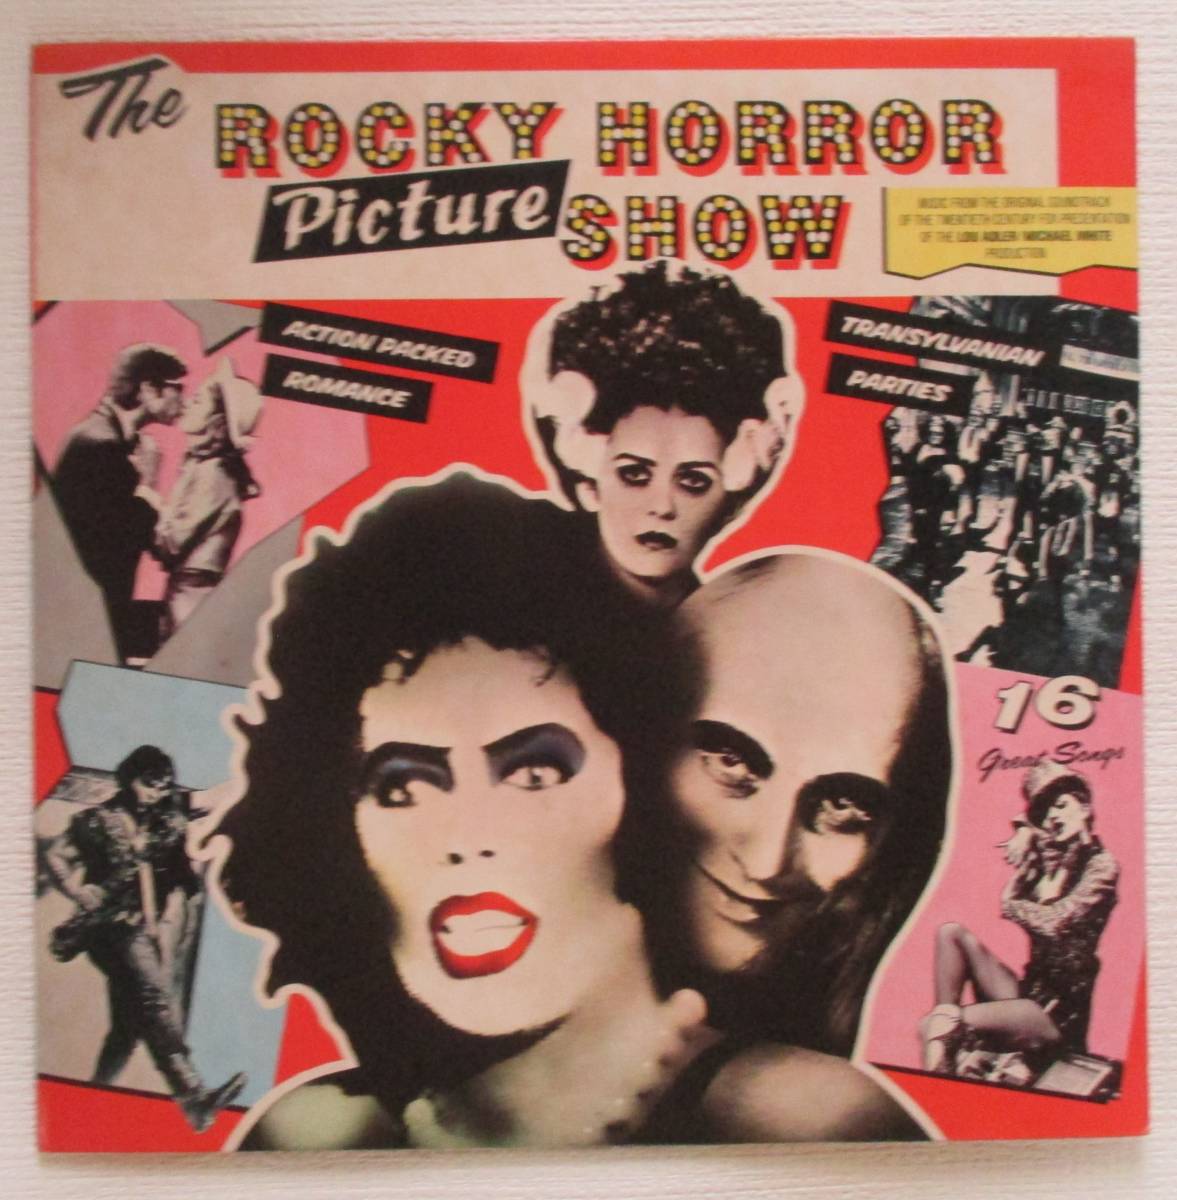 2208円 出荷 ロッキー ホラー ショー Rocky Horror Picture Show サウンドトラック LP レコード 輸入盤 US ミュージカル スーザン サランドン